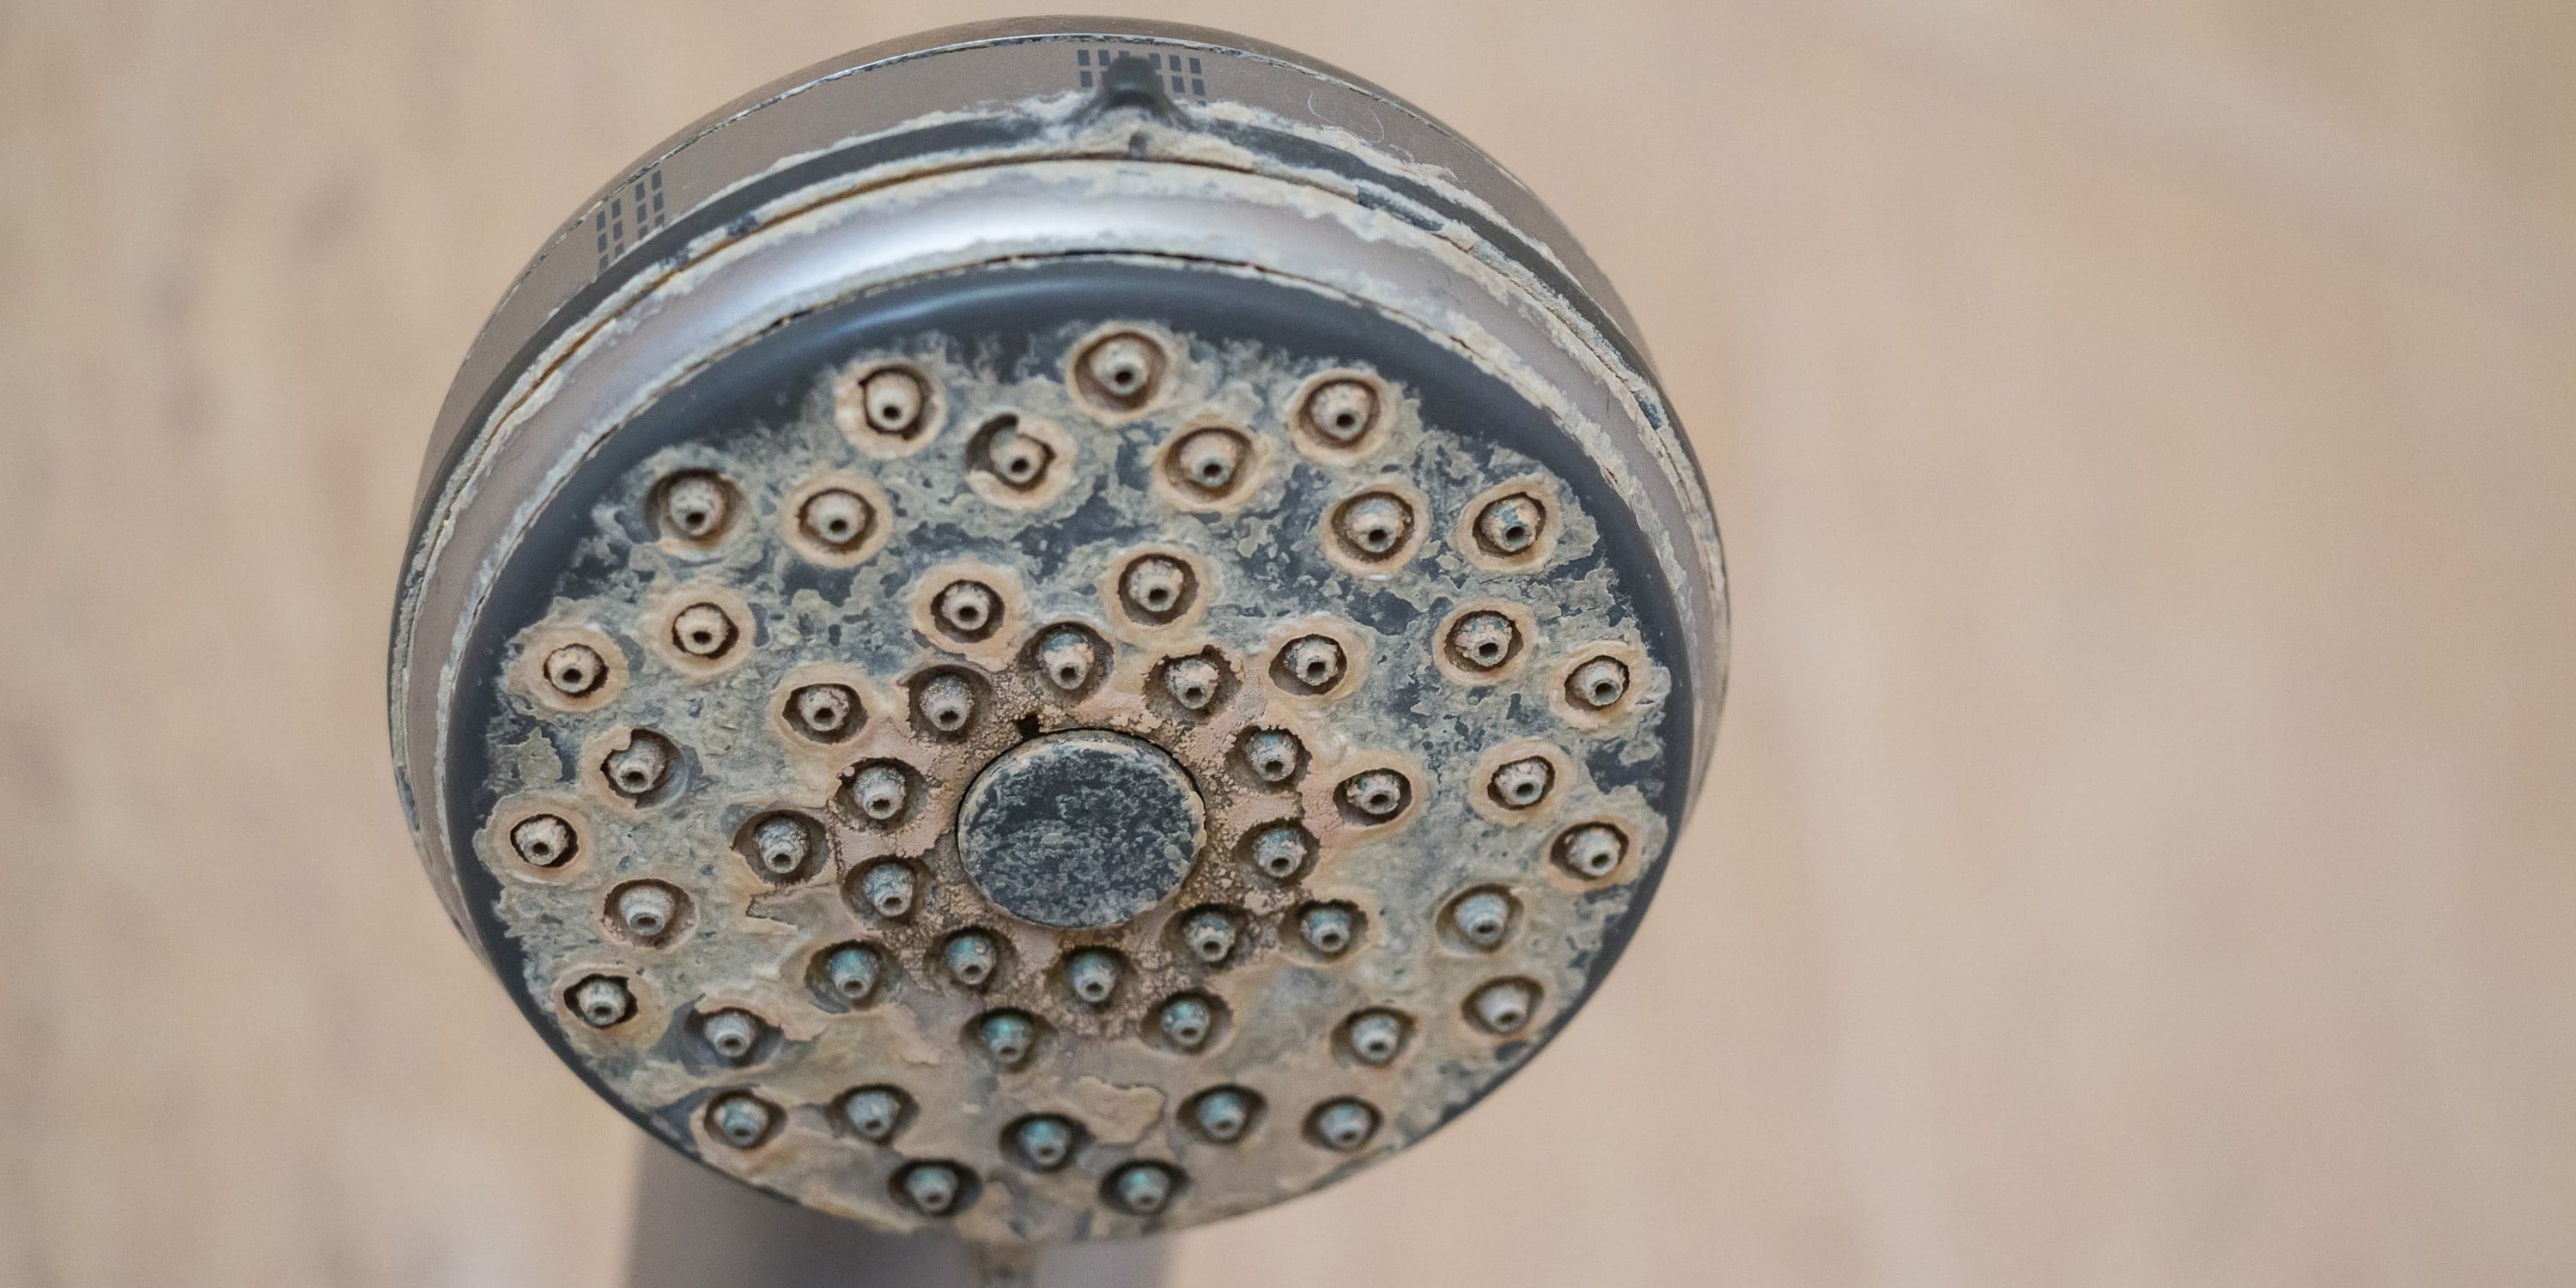 Fabriek steeg operator Kalk verwijderen douche: tips & oplossingen [+ Prijzen]